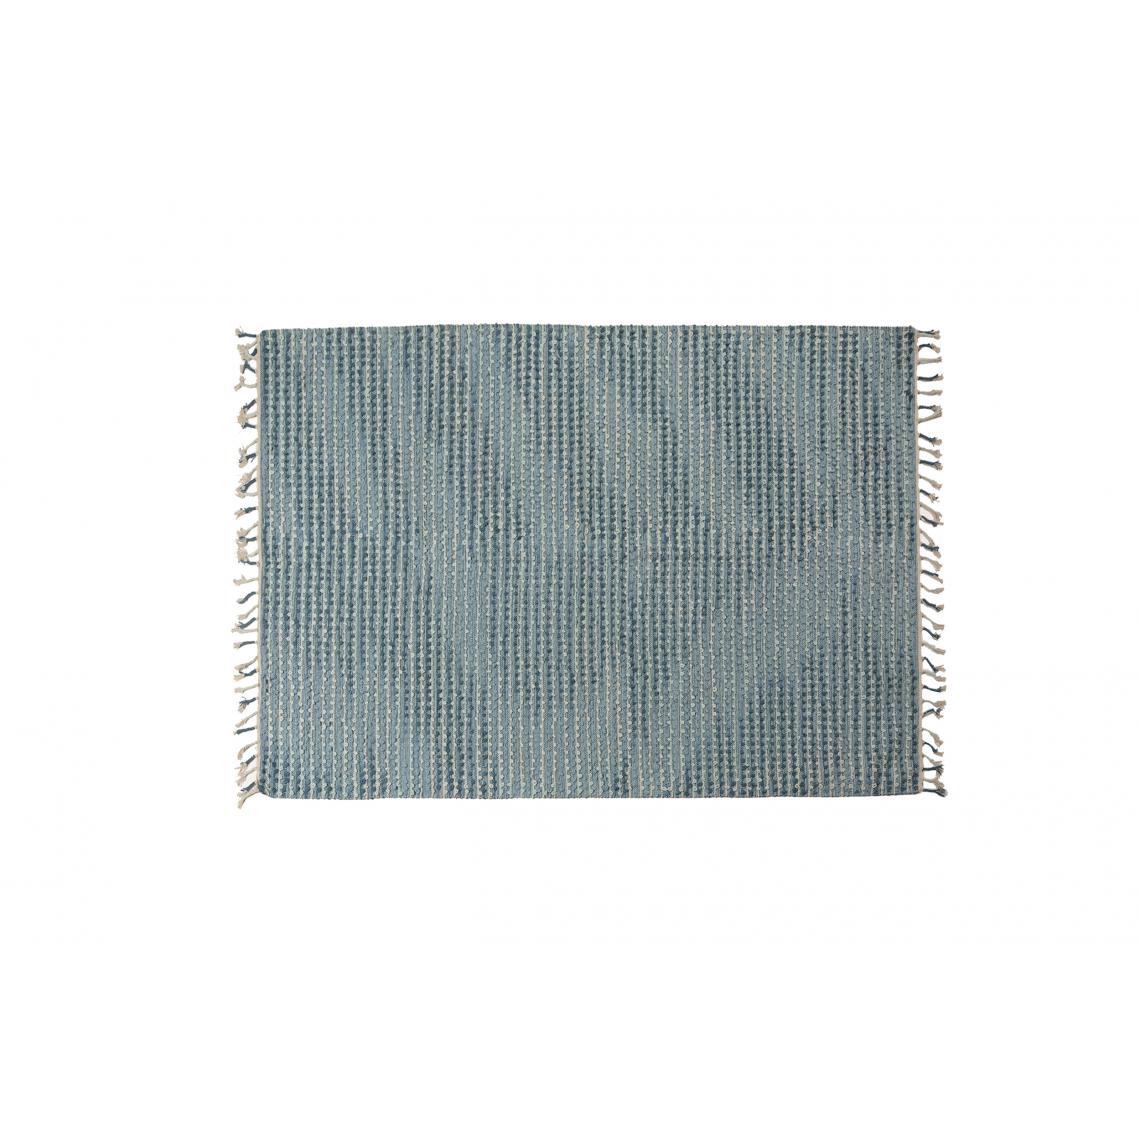 Alter - Tapis moderne Atlanta, style kilim, 100% coton, bleu clair, 110x60cm - Tapis